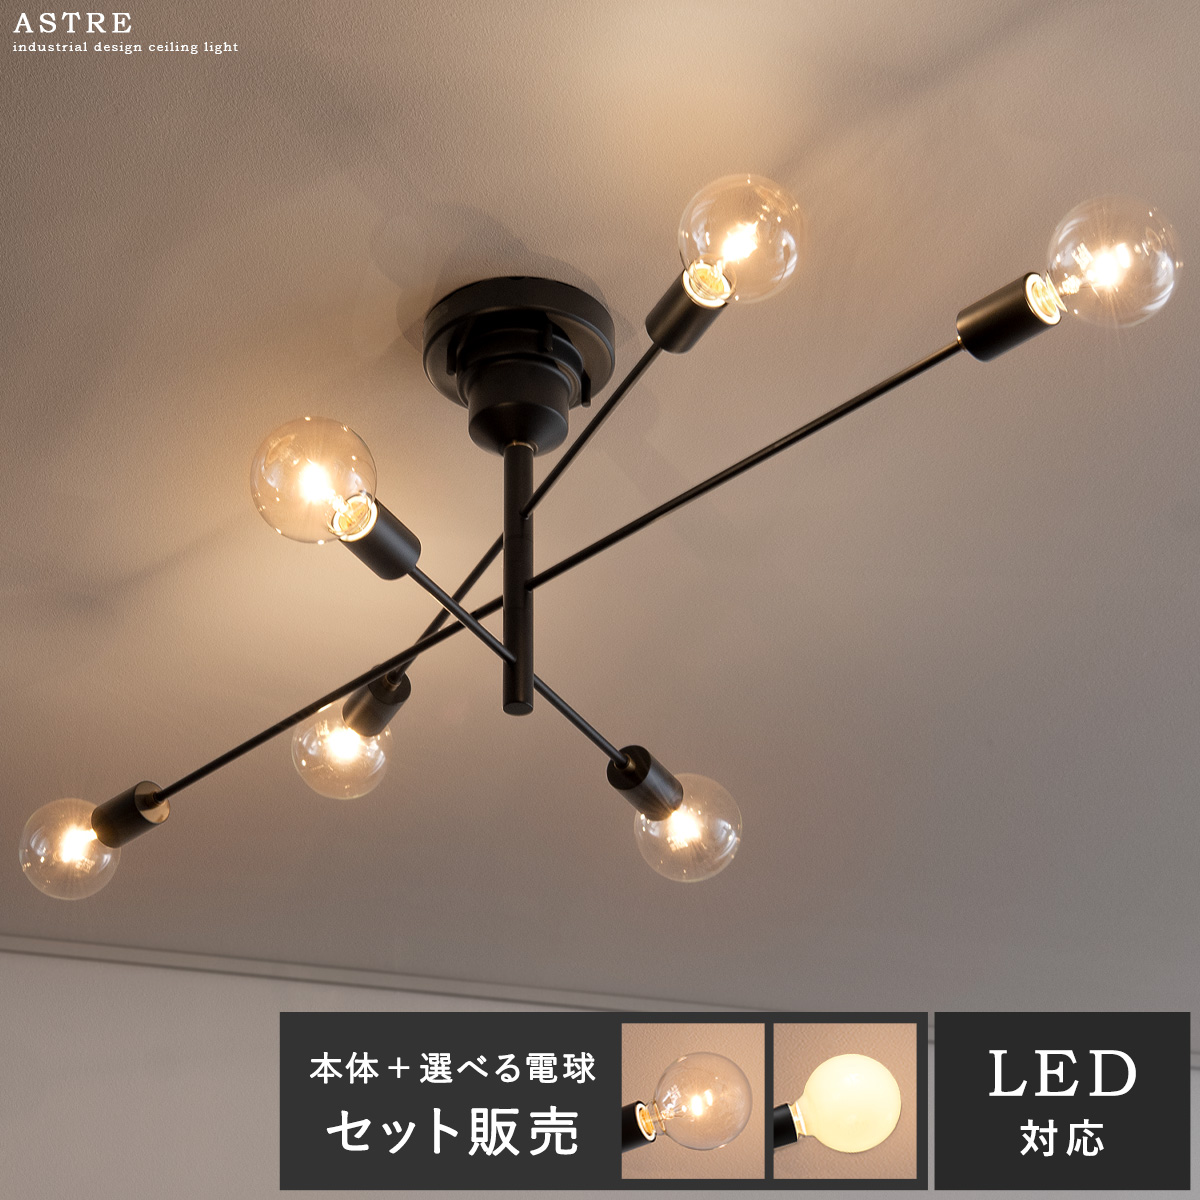 シーリングライト Astre(アストル) 電球6個セット販売 【公式】 エア・リゾーム インテリア・家具通販